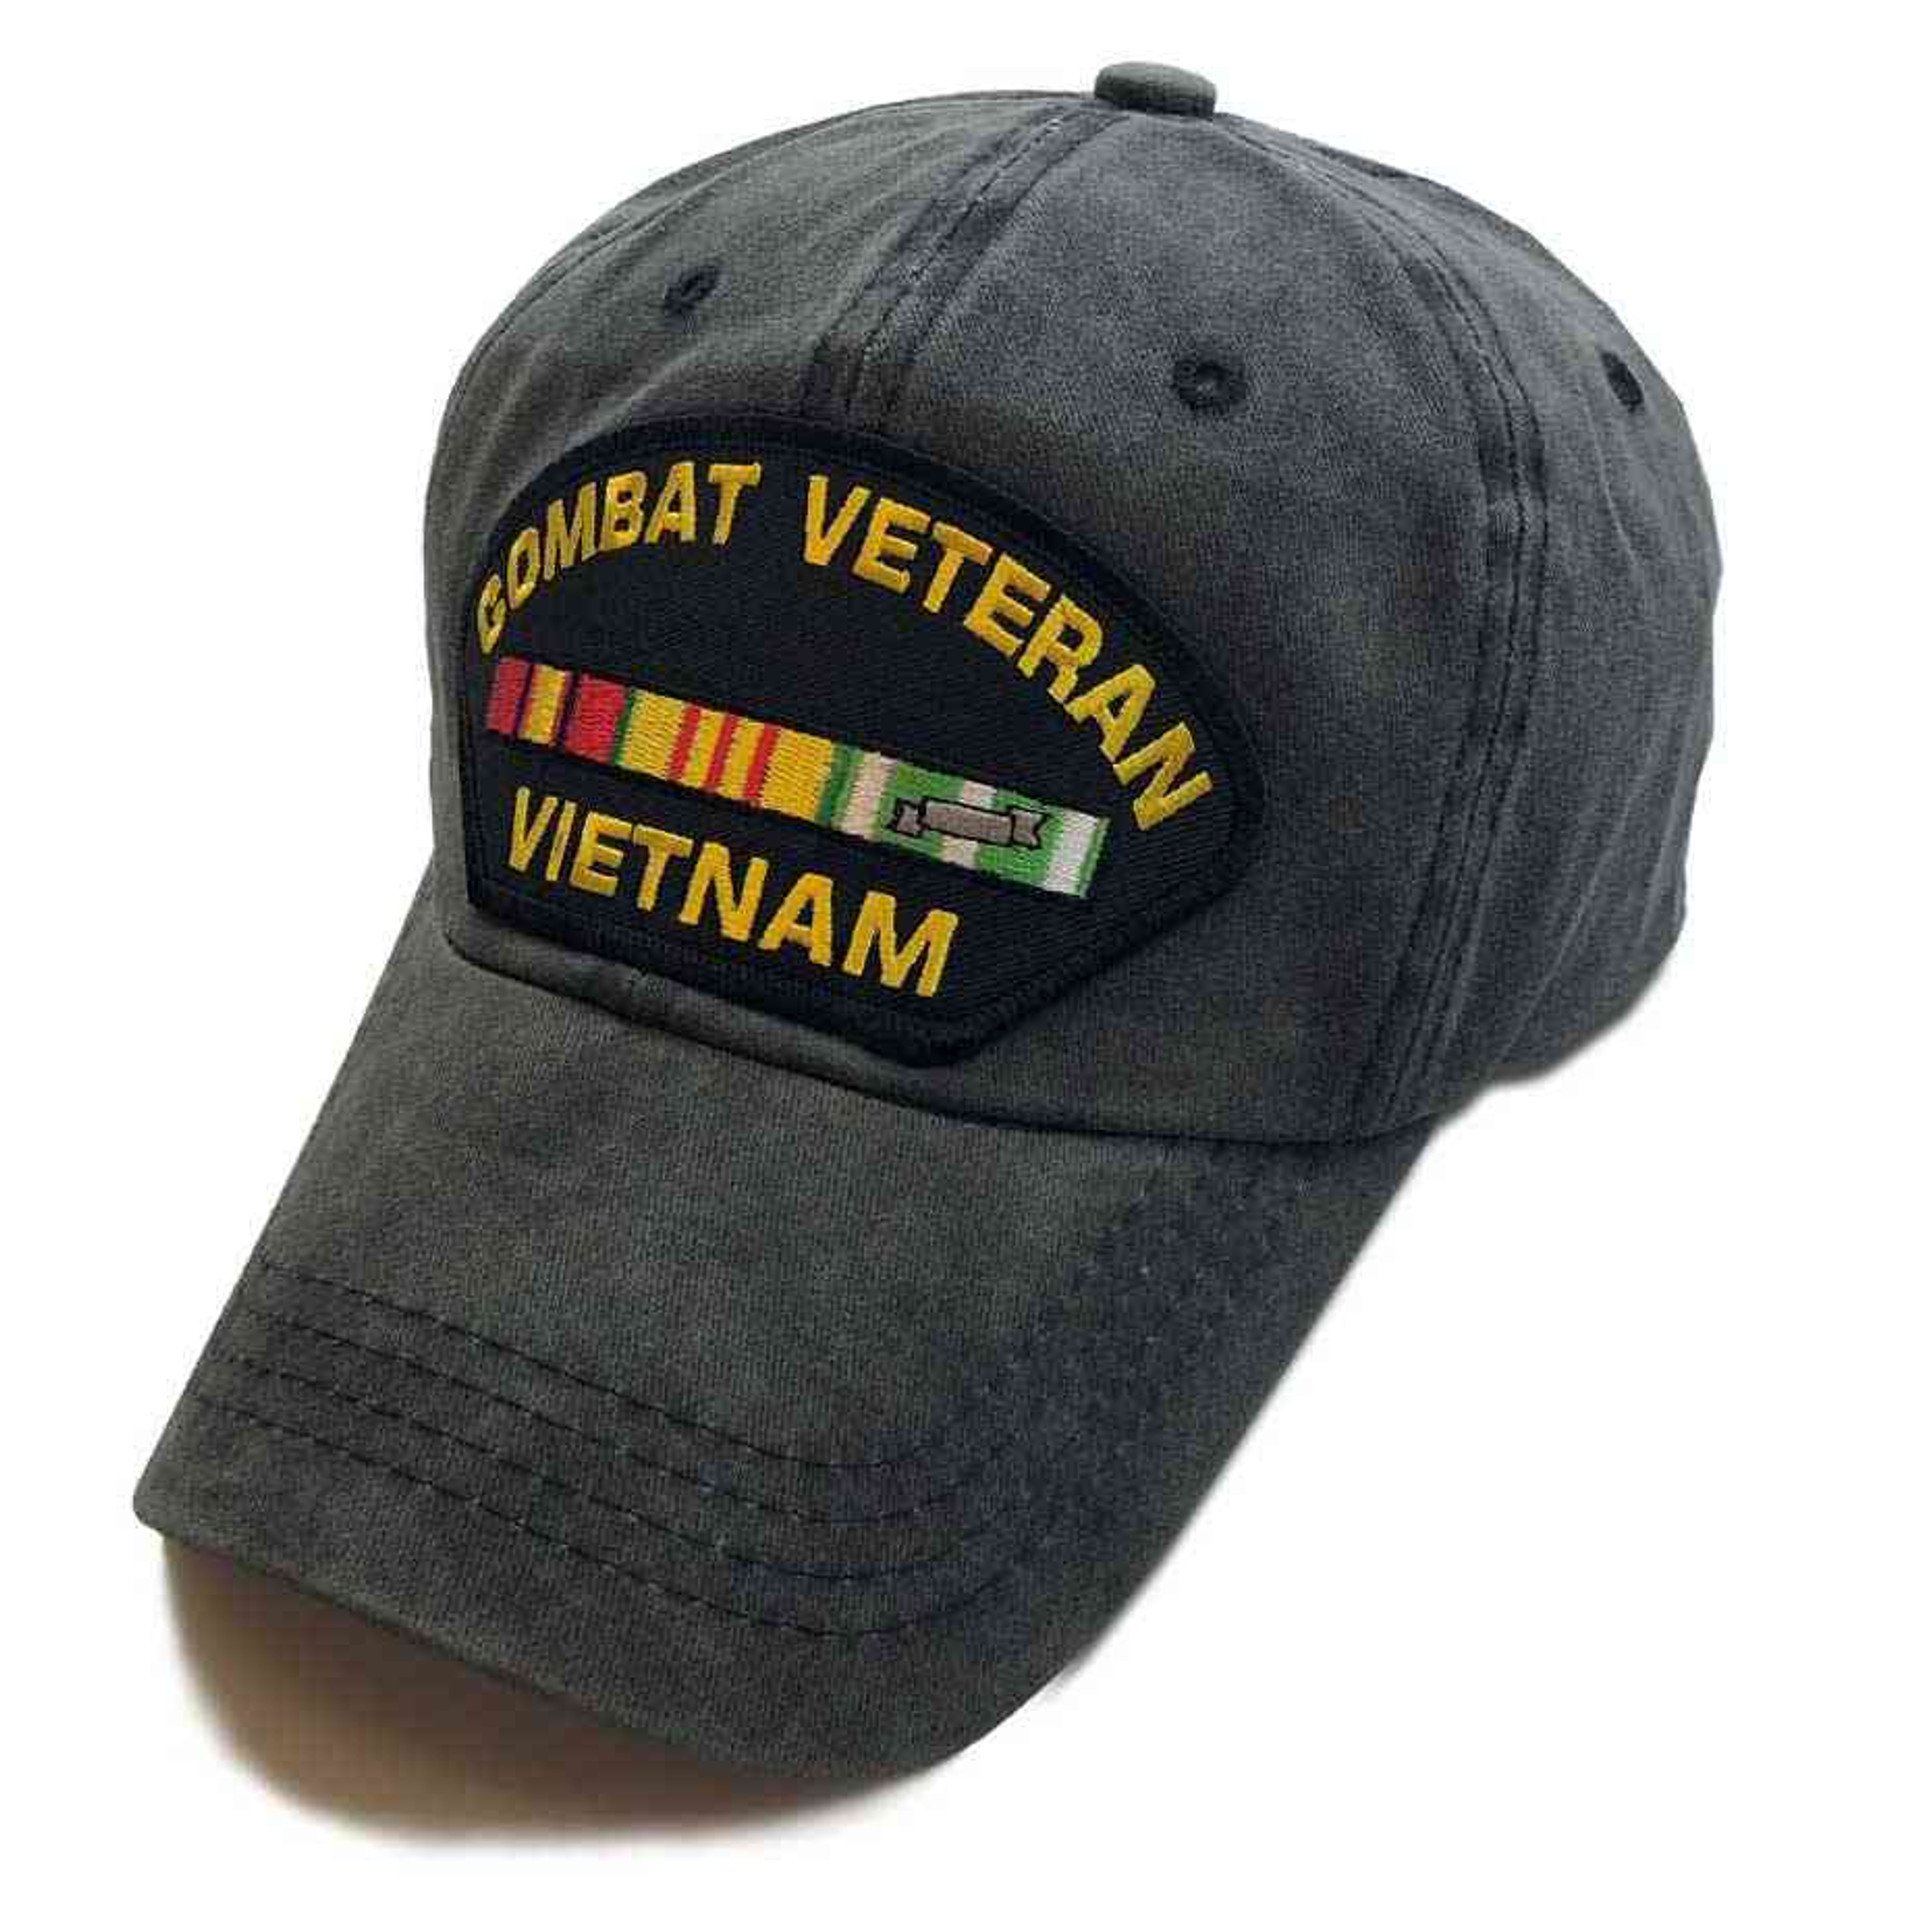 Combat Veteran Vietnam Hat Special Edition Vintage Grey